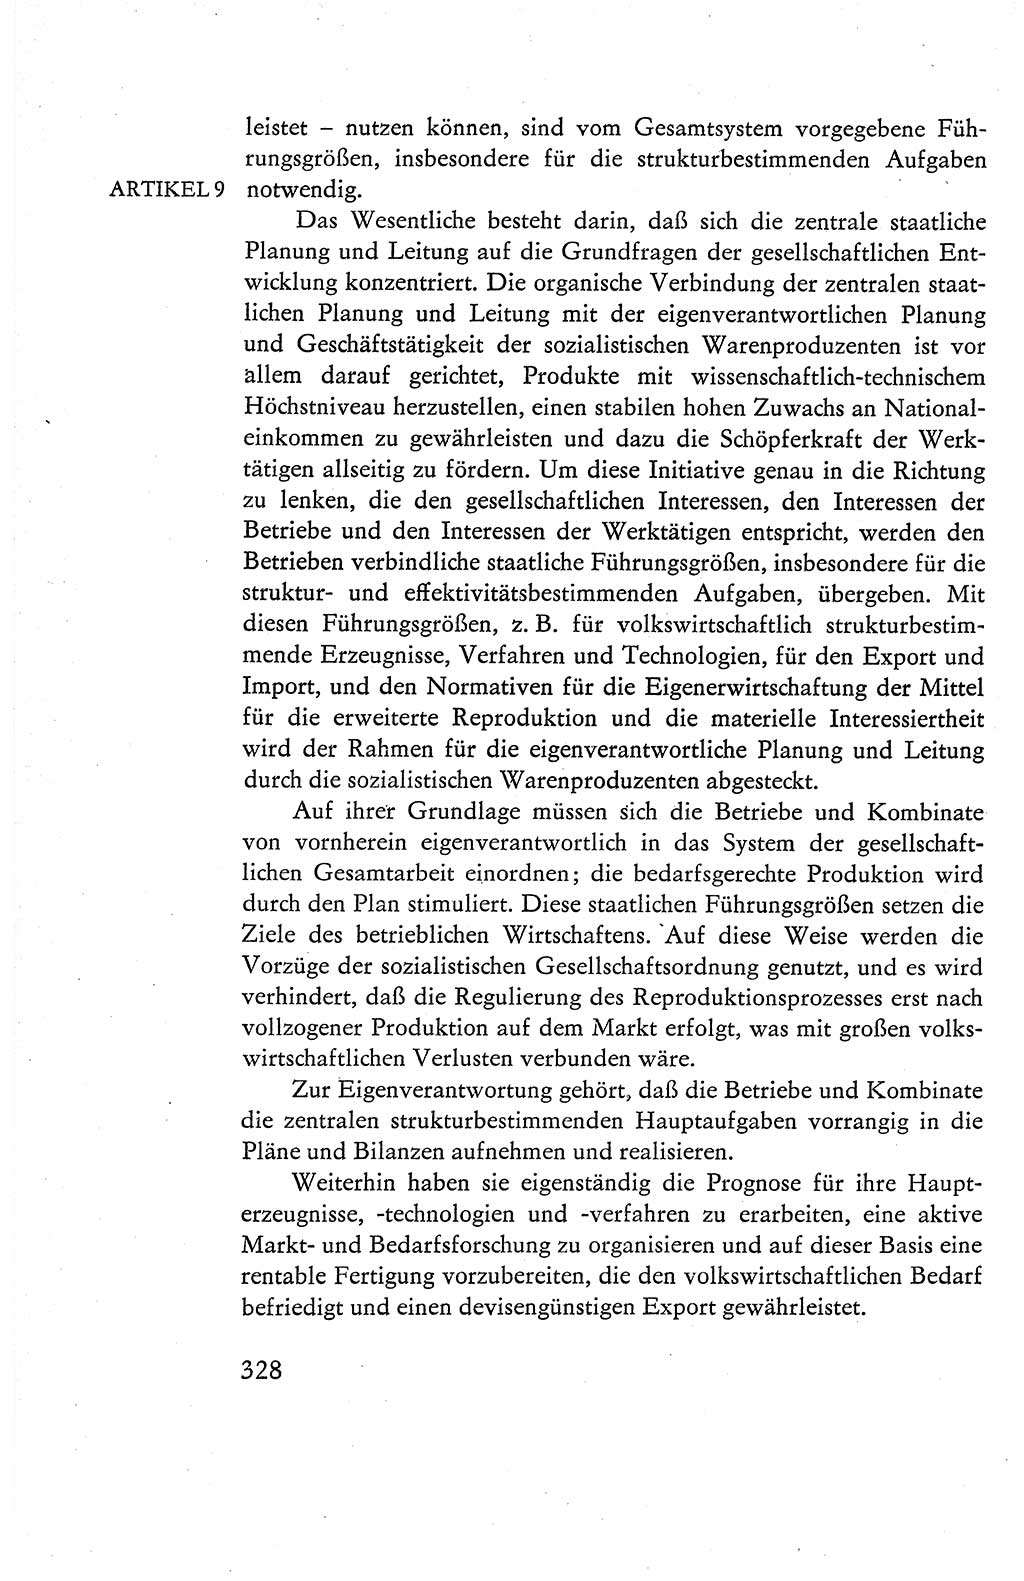 Verfassung der Deutschen Demokratischen Republik (DDR), Dokumente, Kommentar 1969, Band 1, Seite 328 (Verf. DDR Dok. Komm. 1969, Bd. 1, S. 328)